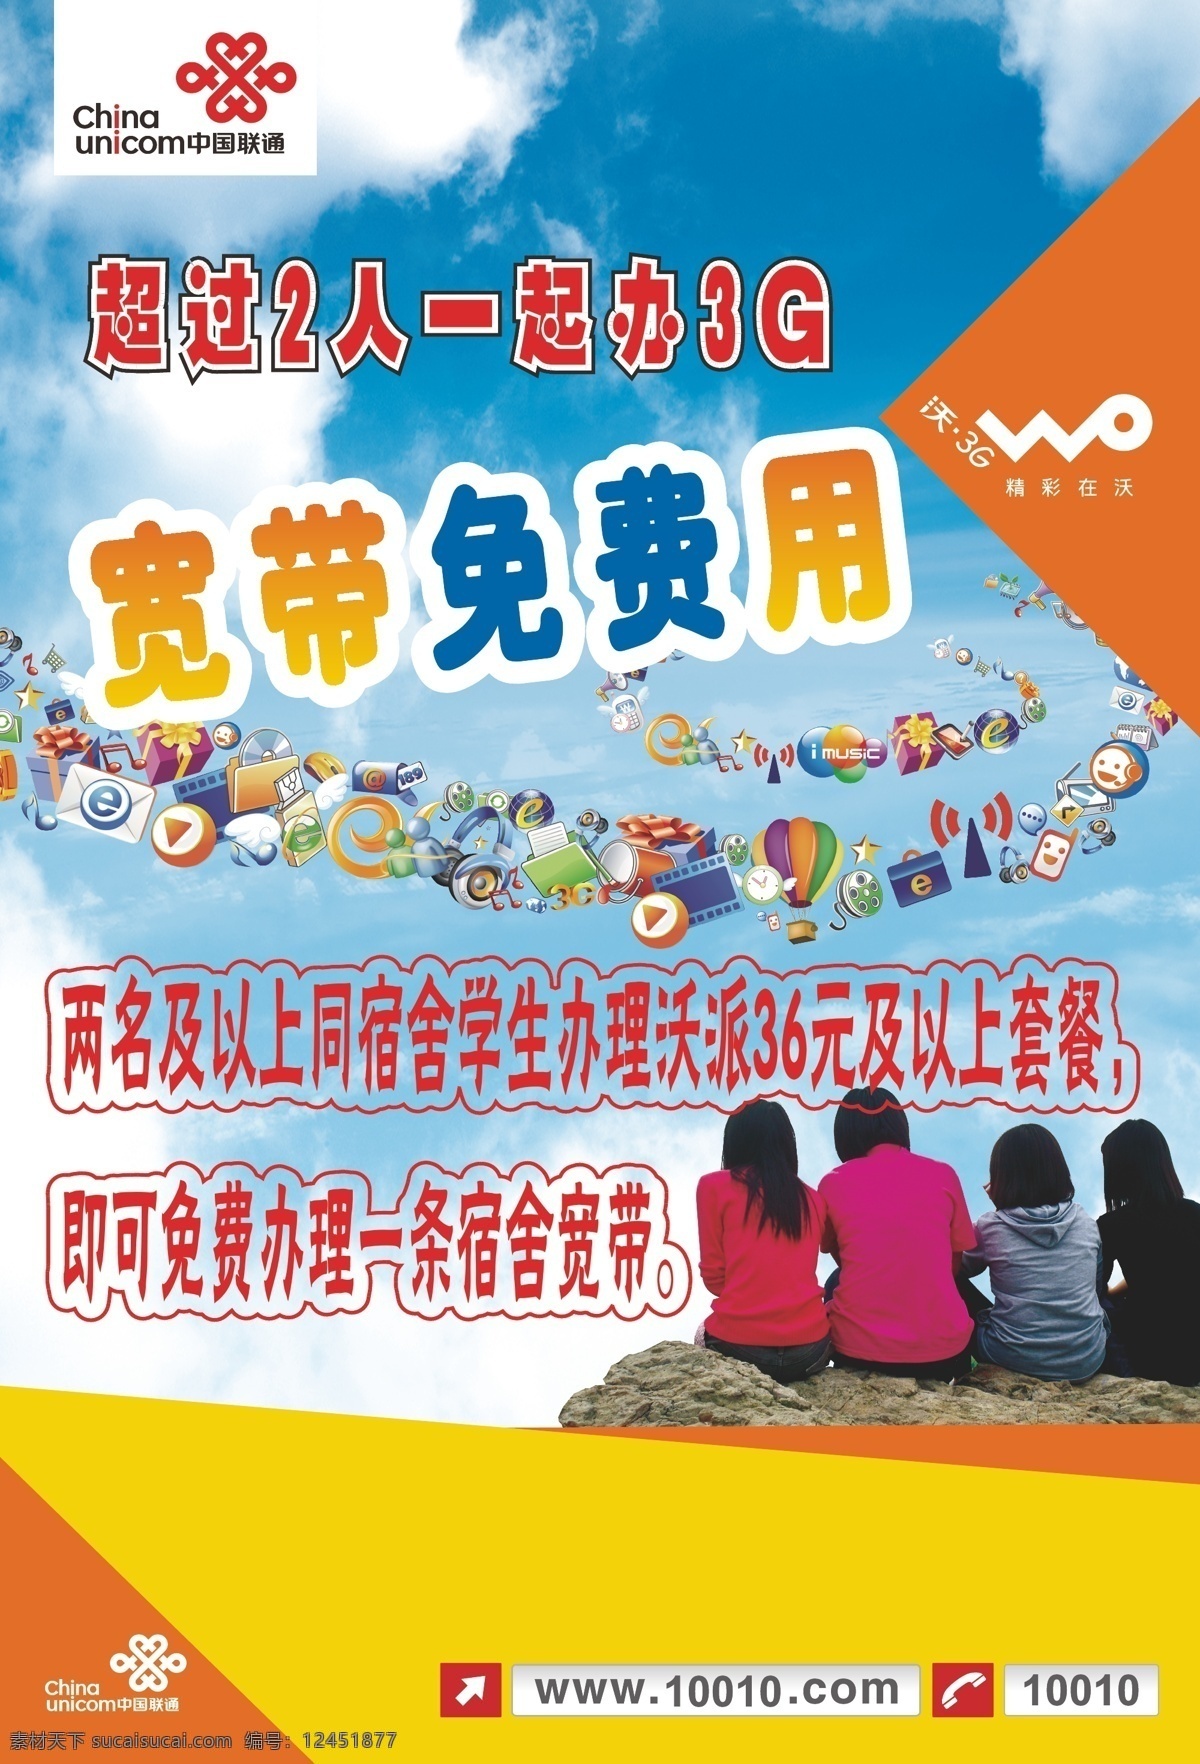 联通 3g 背影 宽带 人物 石头 中国联通 联通海报设计 沃 免费用 矢量